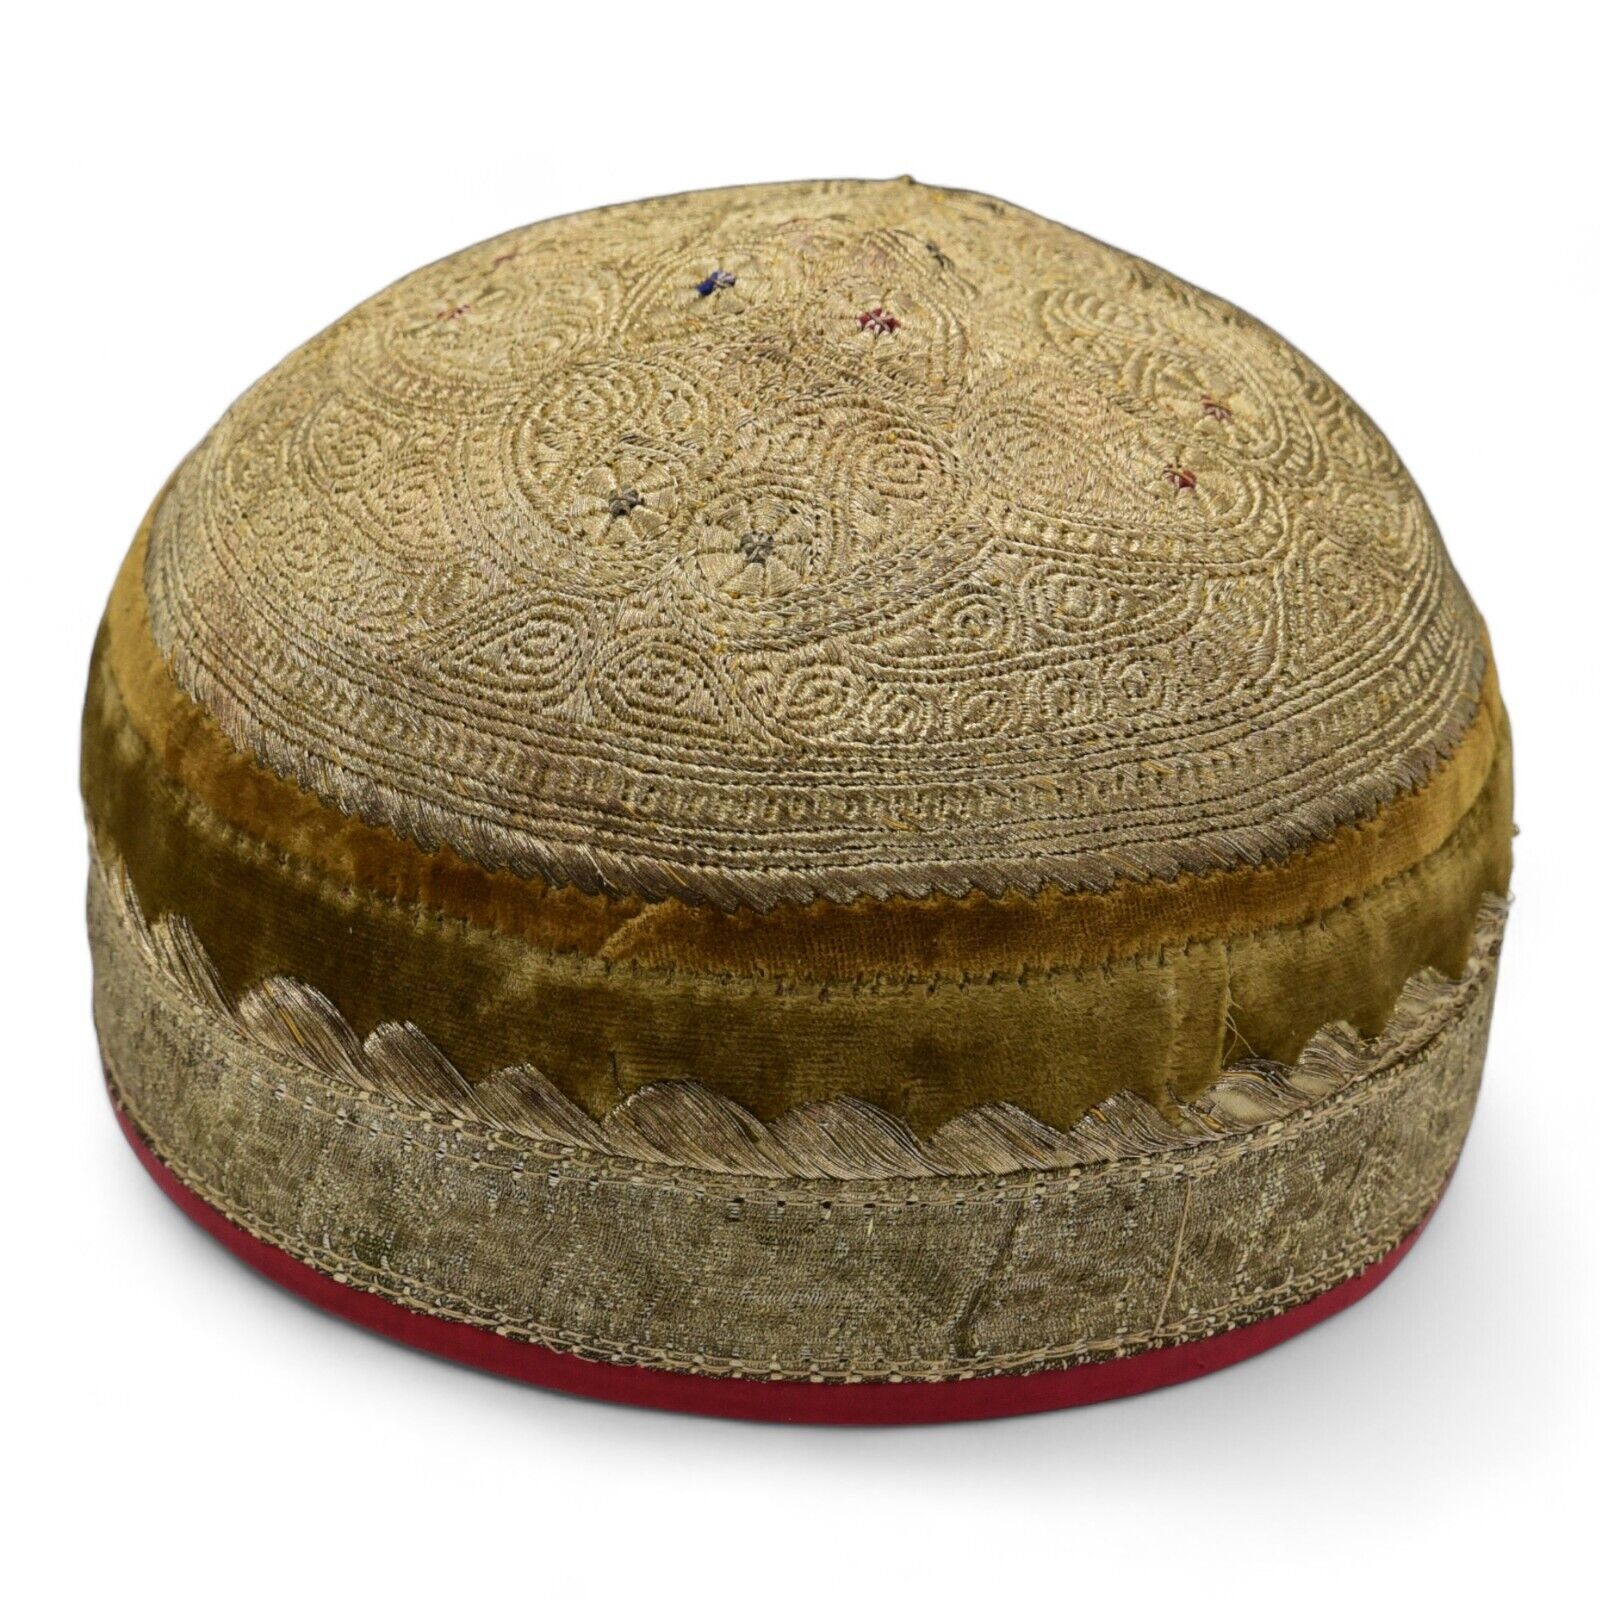 Vintage Uzbekistan Middle Eastern Embroidered Cap Hat Handmade